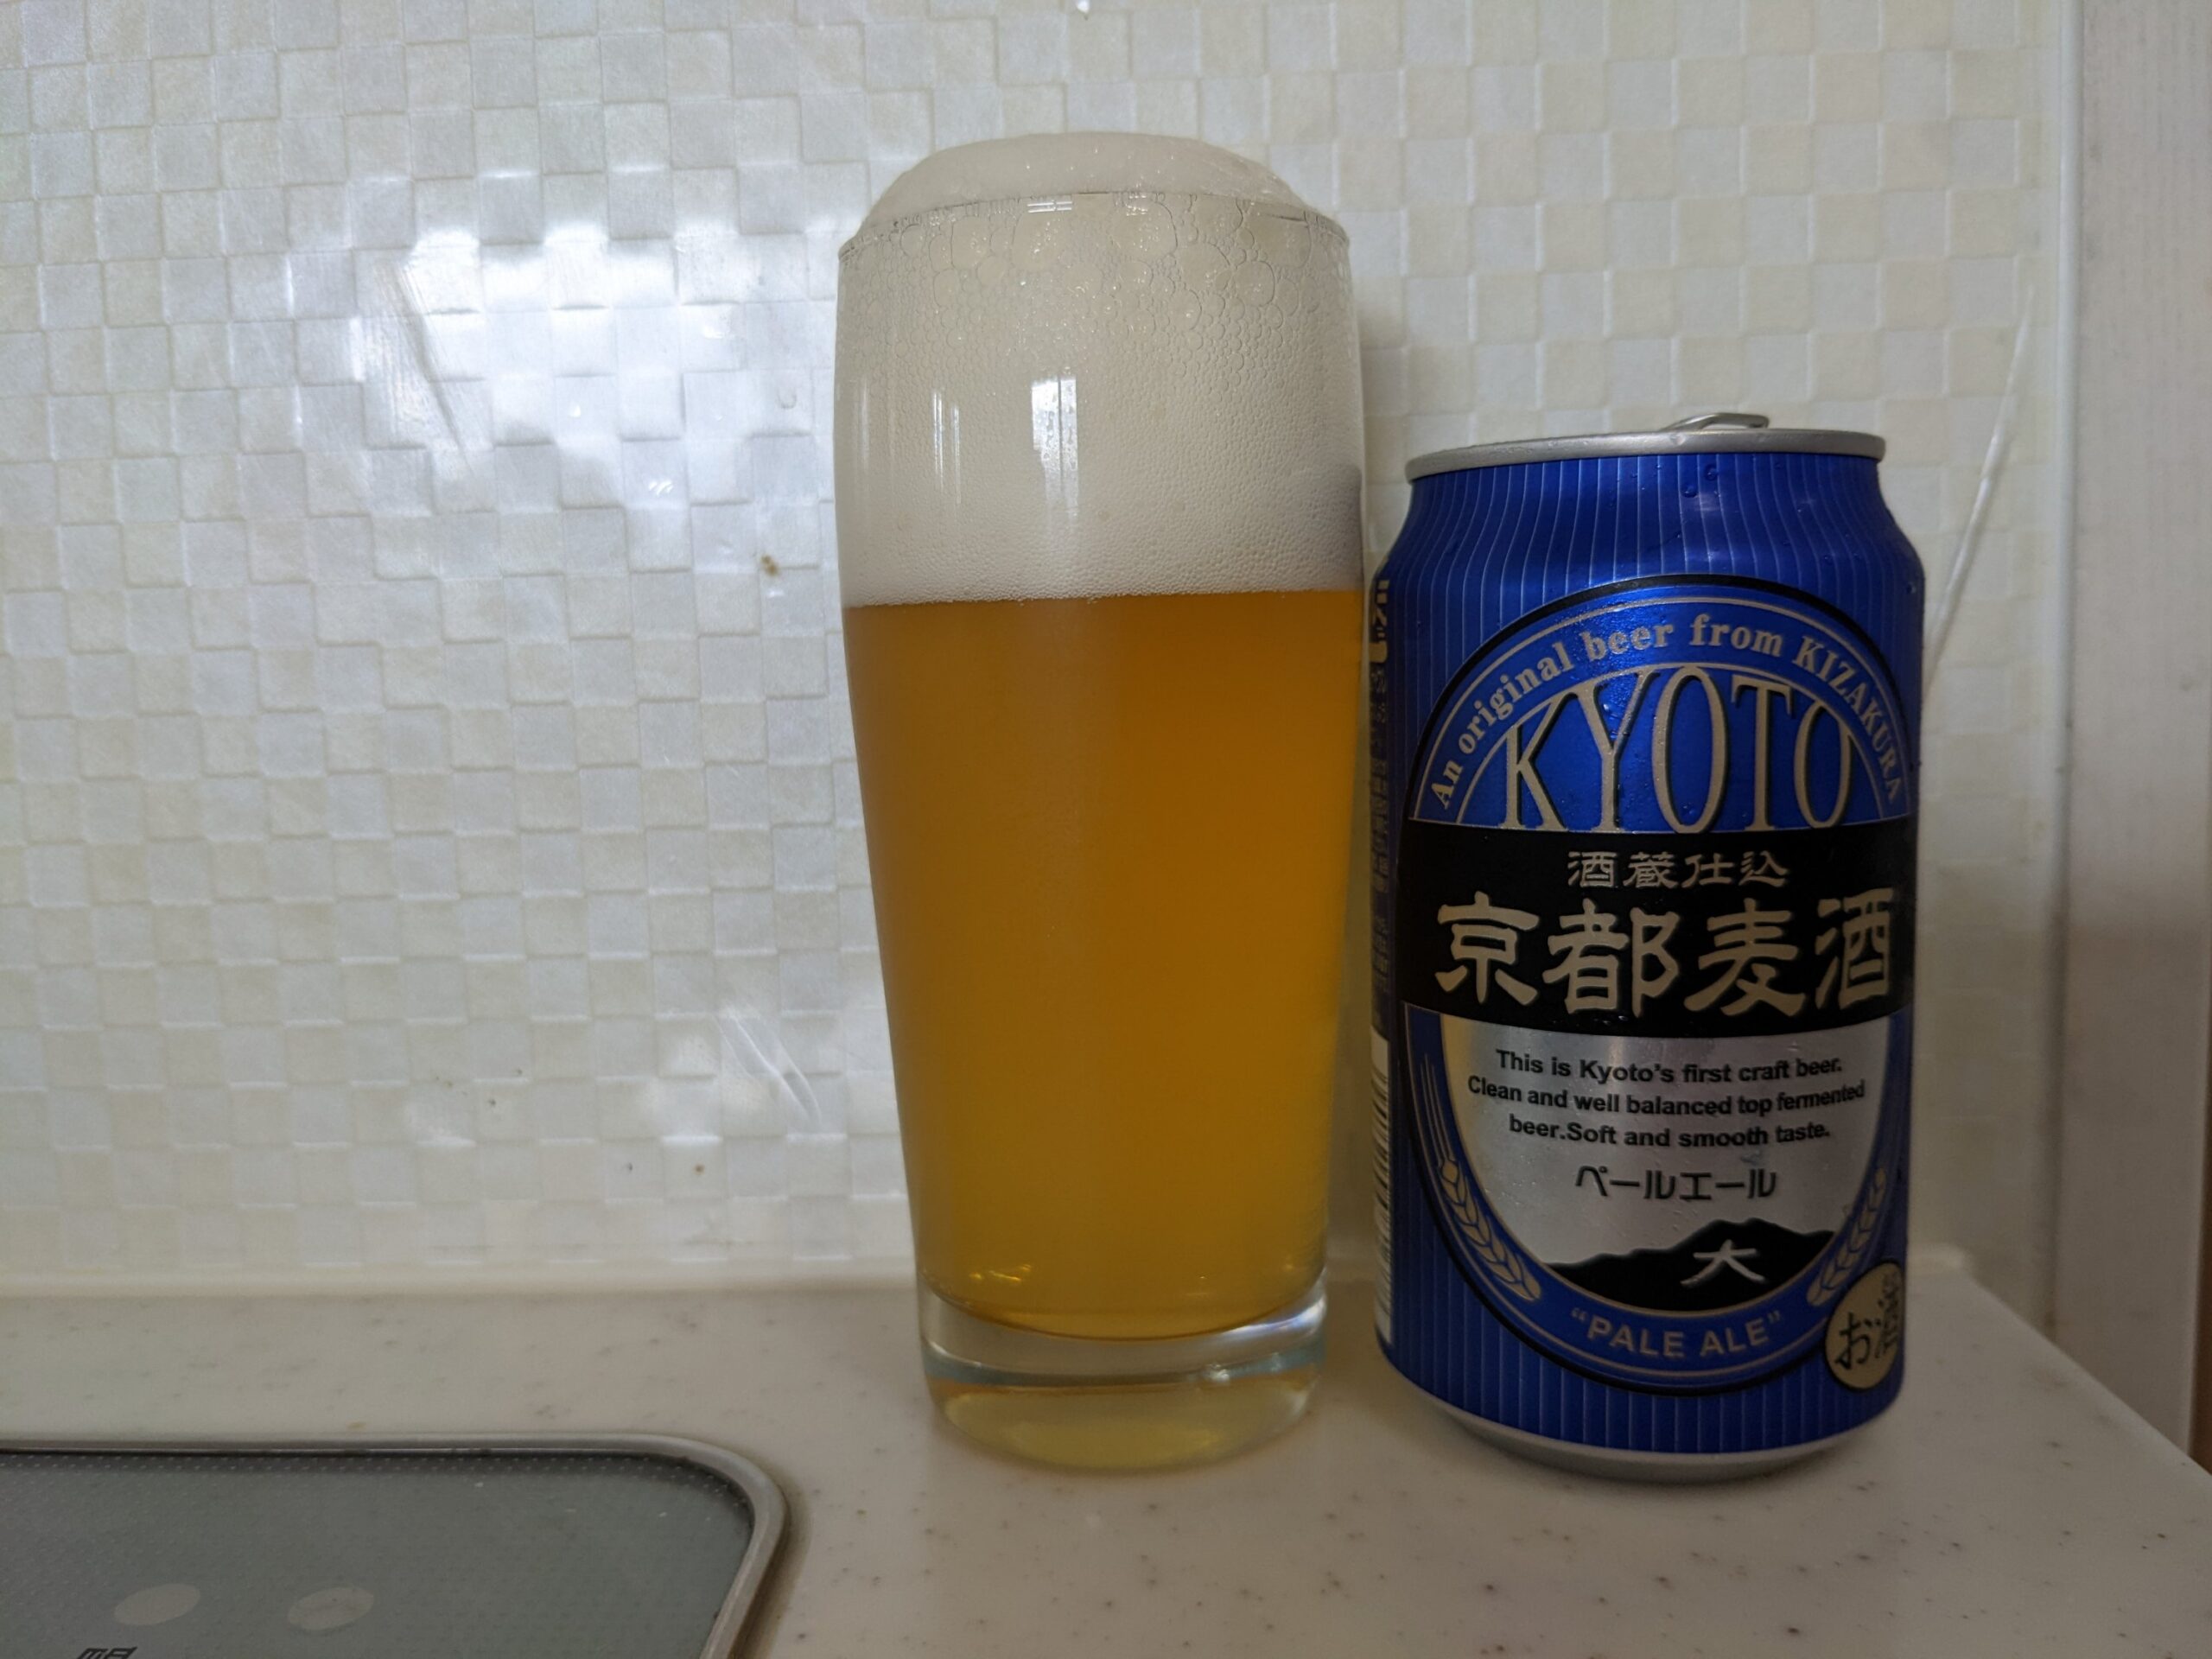 「京都麦酒ペールエール」が注がれたグラスとその缶